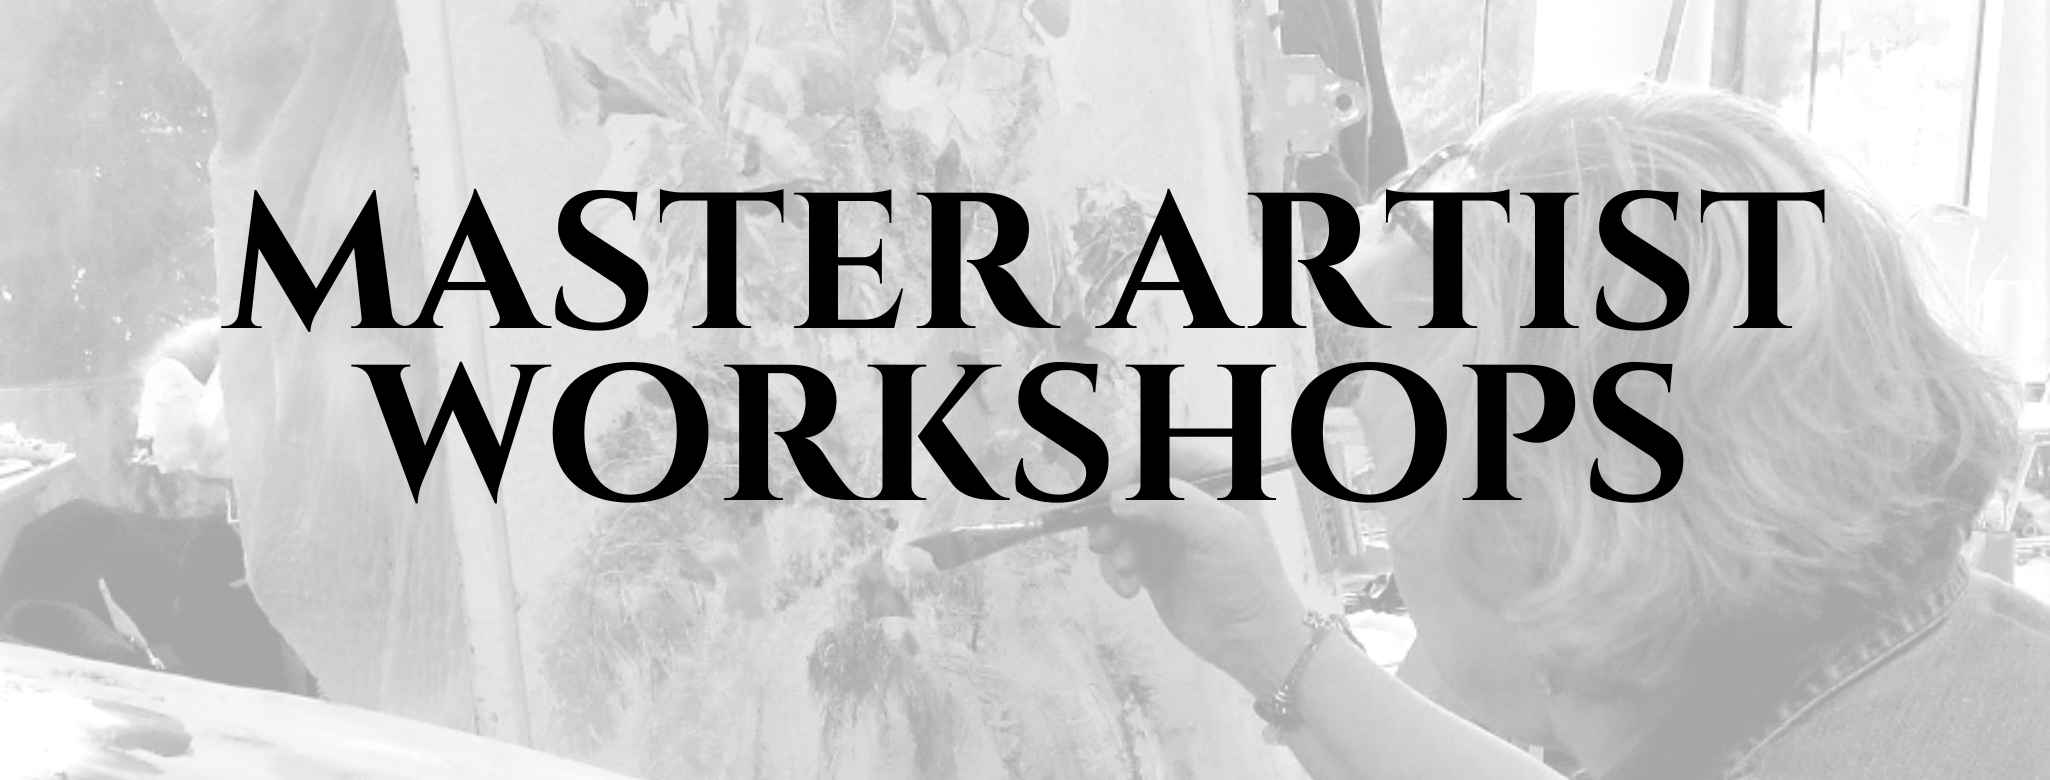 Master artist workshops